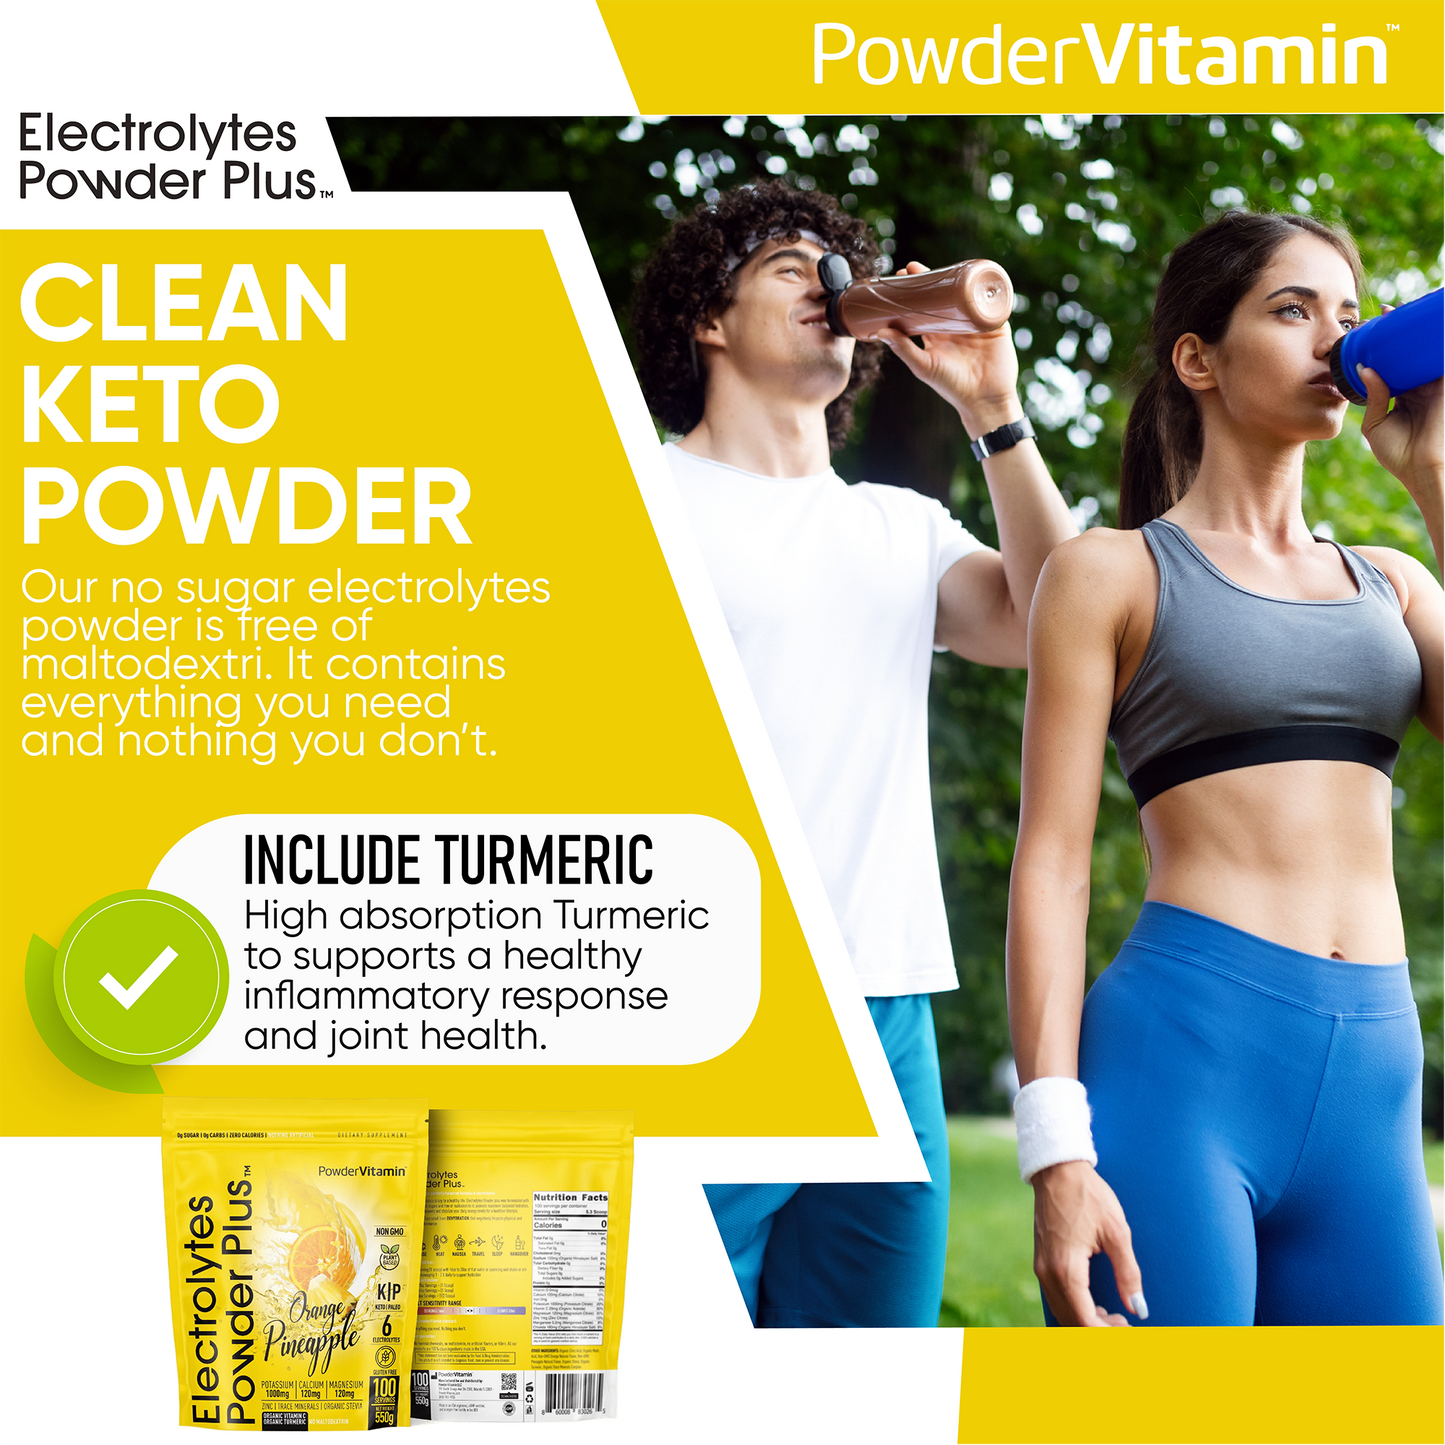 Orange Pineapple Electrolytes Powder 100 Servings